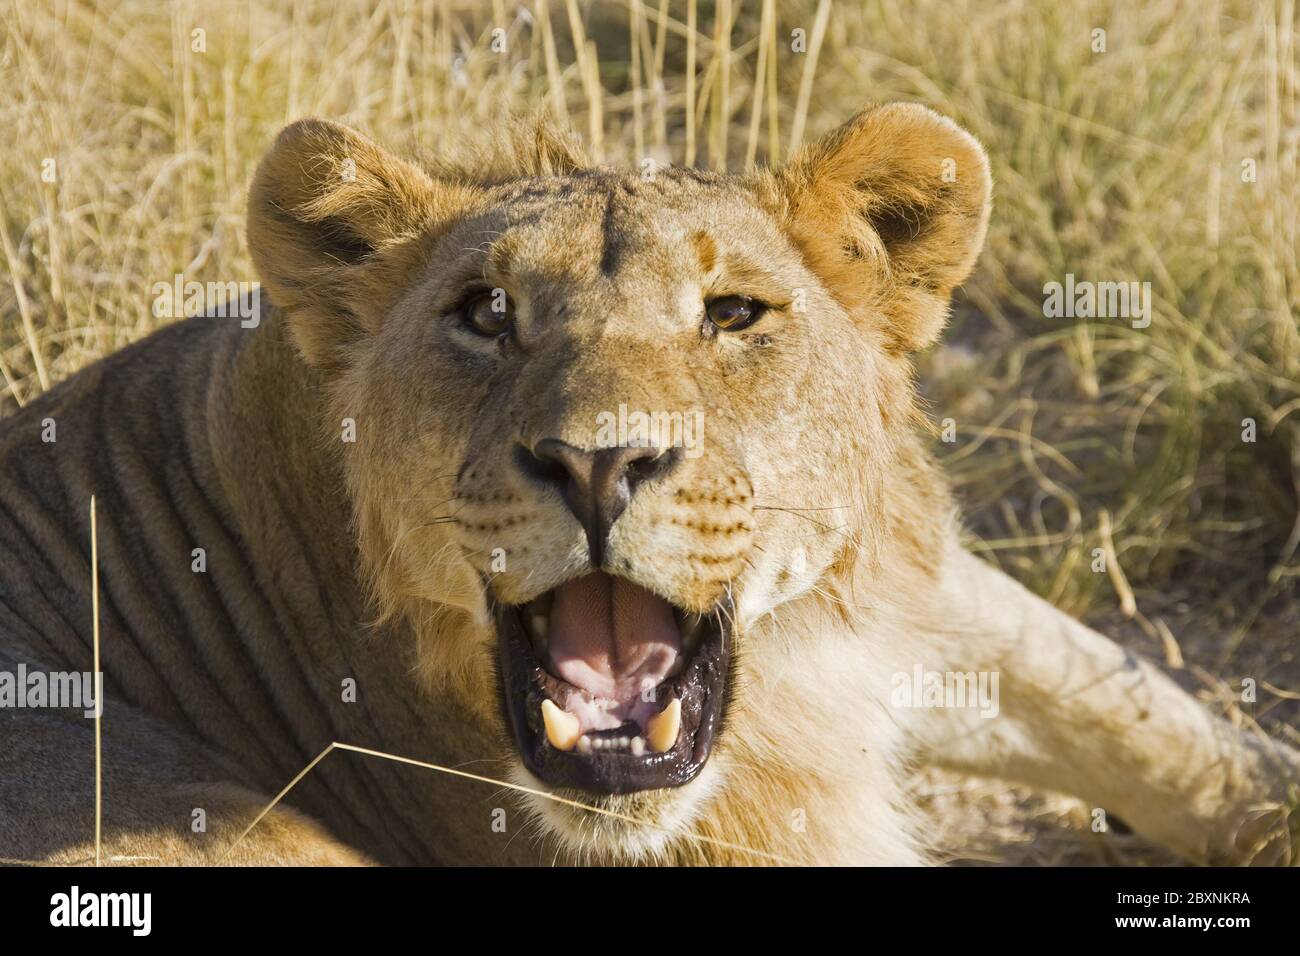 Lion africain, Panthera leo, Namibie, Afrique Banque D'Images